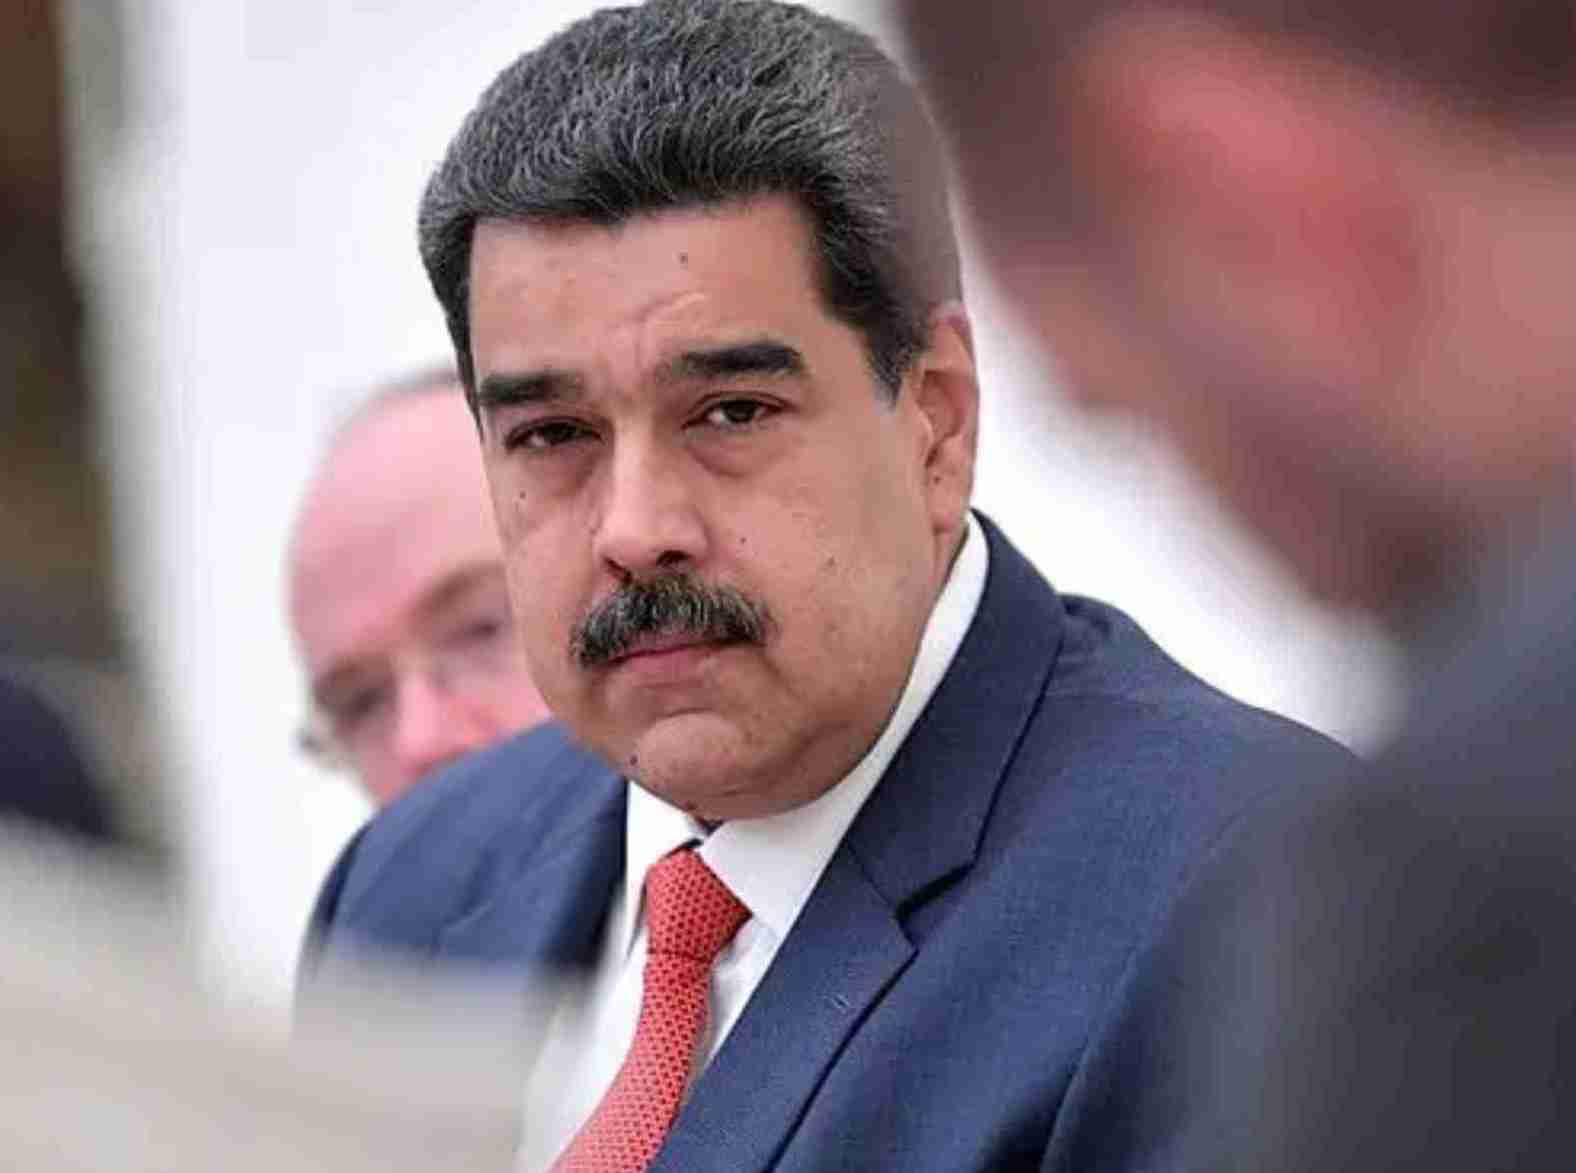 Ação autoritária na Venezuela: Maduro e a perseguição sob a máscara da justiça